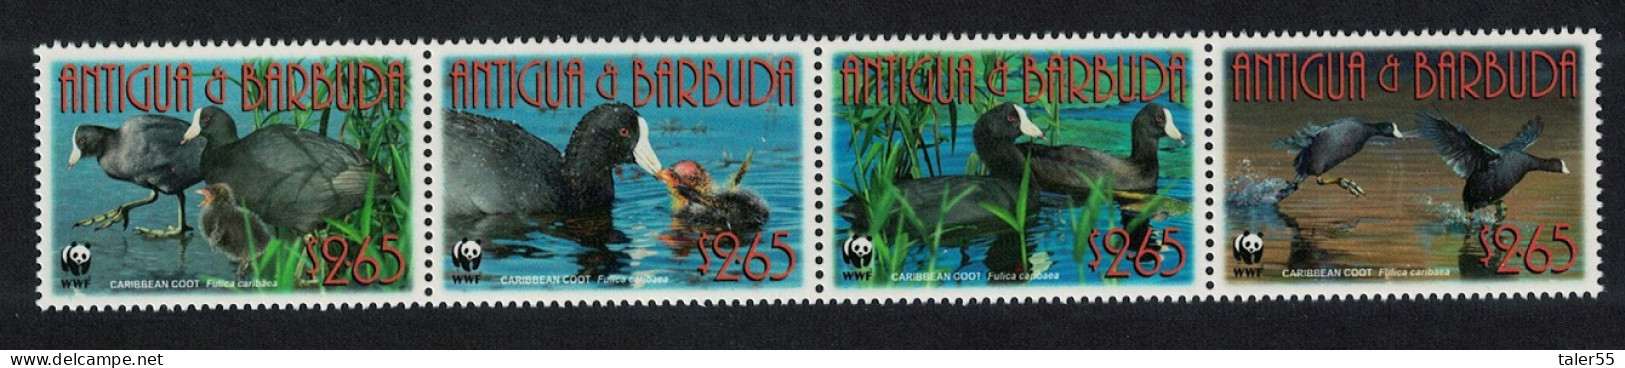 Antigua And Barbuda Birds WWF Caribbean Coot Strip Of 4v 2009 MNH SG#4259-4262 MI#4702-4705 Sc#3055a-d - Antigua And Barbuda (1981-...)